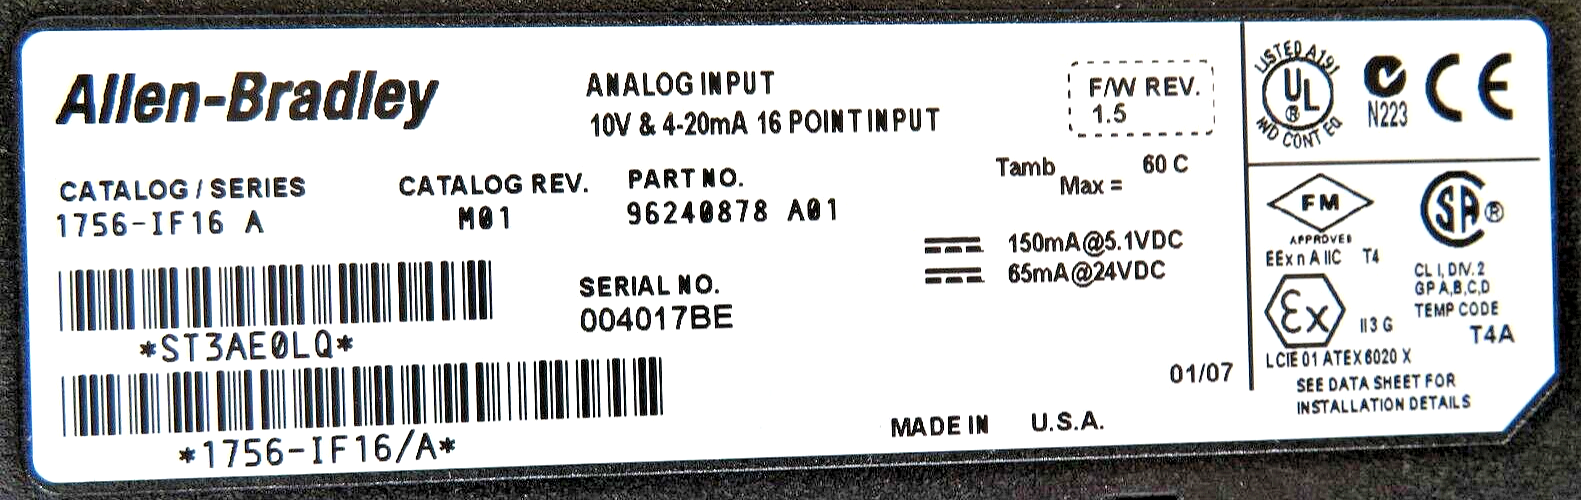 Allen-Bradley 1756-IF16 ControlLogix 16-Point Analog Input Module Series A